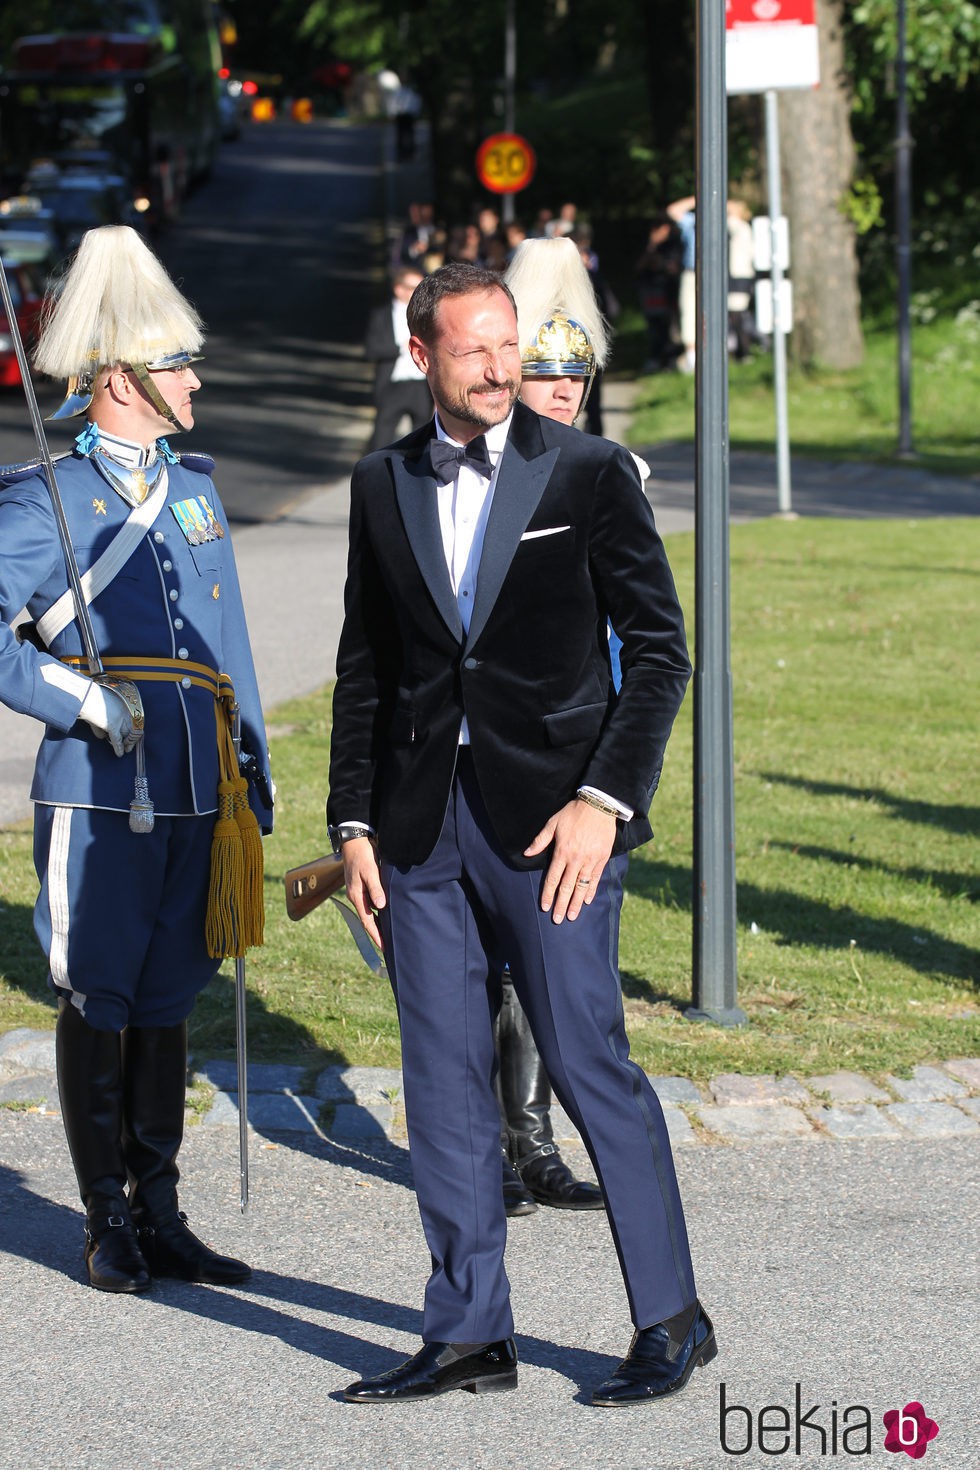 Haakon de Noruega en la cena de gala previa a la boda de Carlos Felipe de Suecia y Sofia Hellqvist